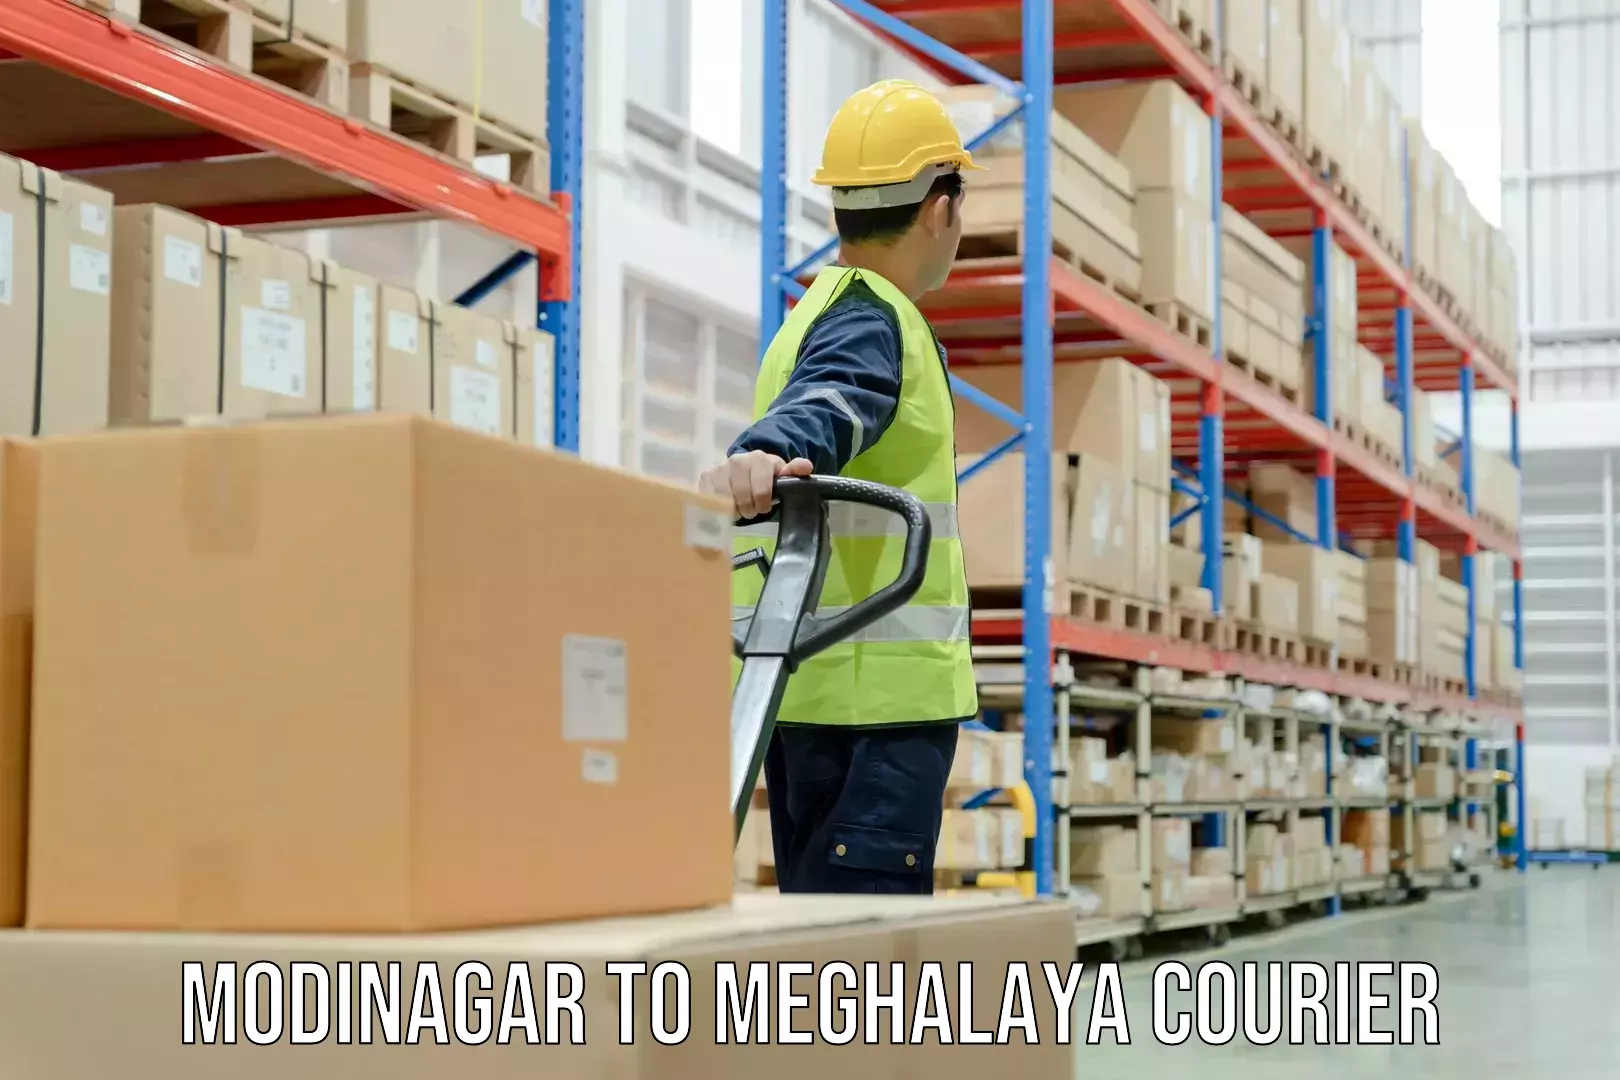 Courier app Modinagar to Meghalaya